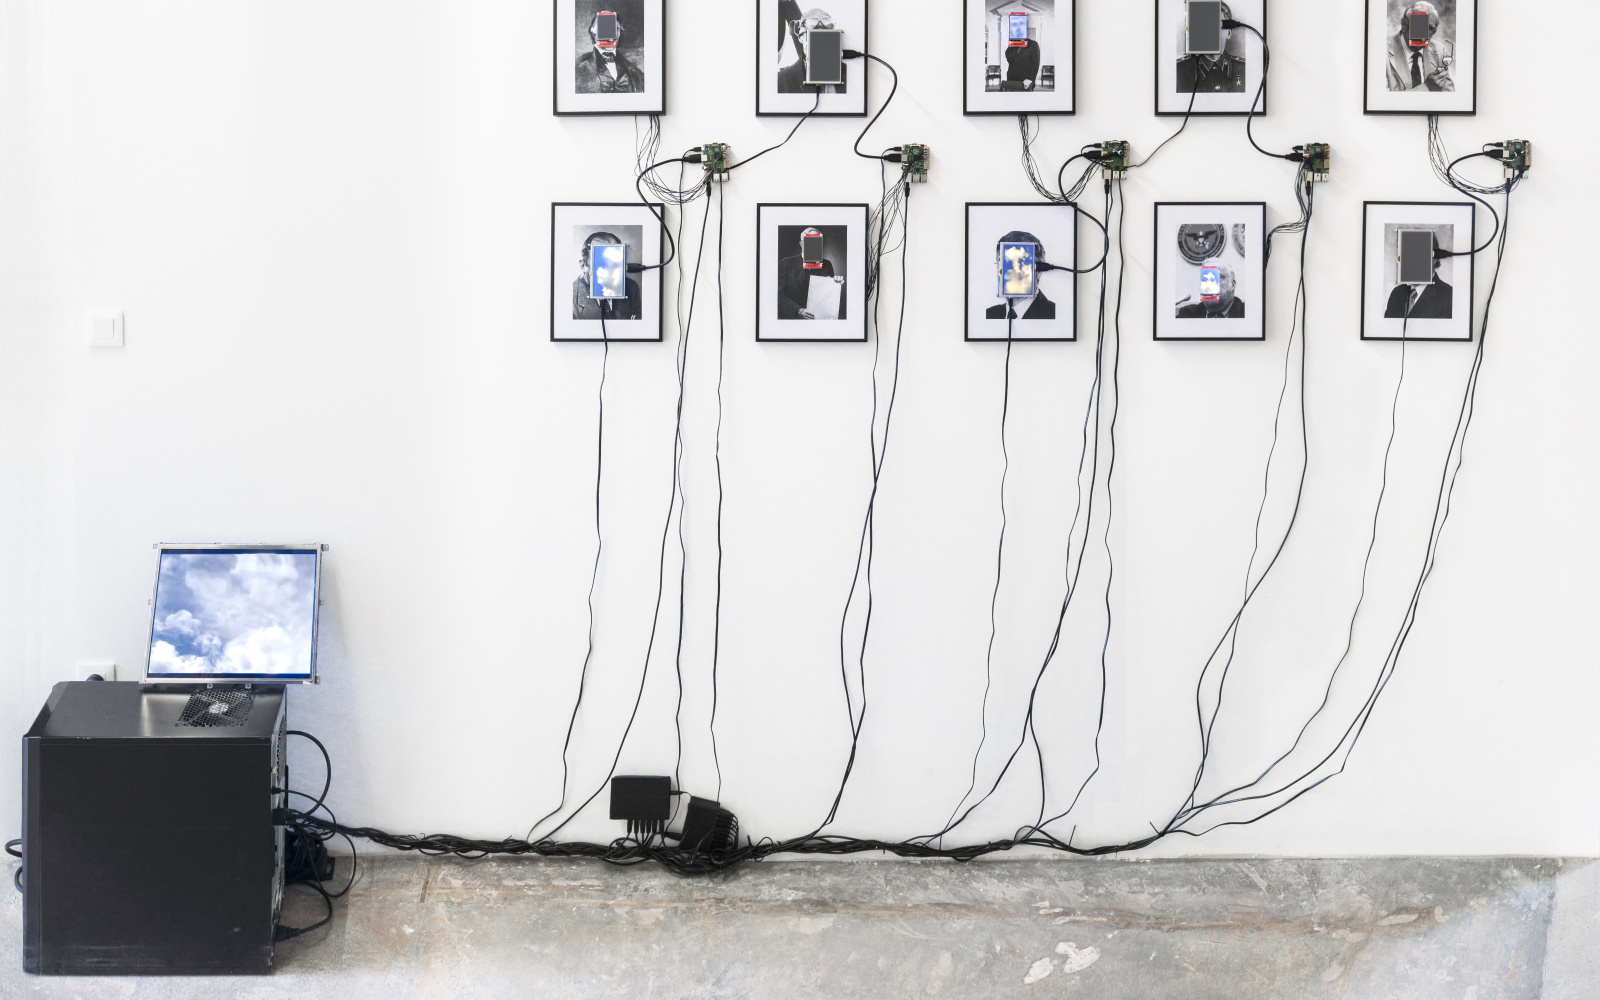 Das Foto zeigt 10 eingerahmte Portraits auf deren Gesichter kleine Monitore angebracht sind. Diese sind durch Kabel mit einem Computer verbunden.